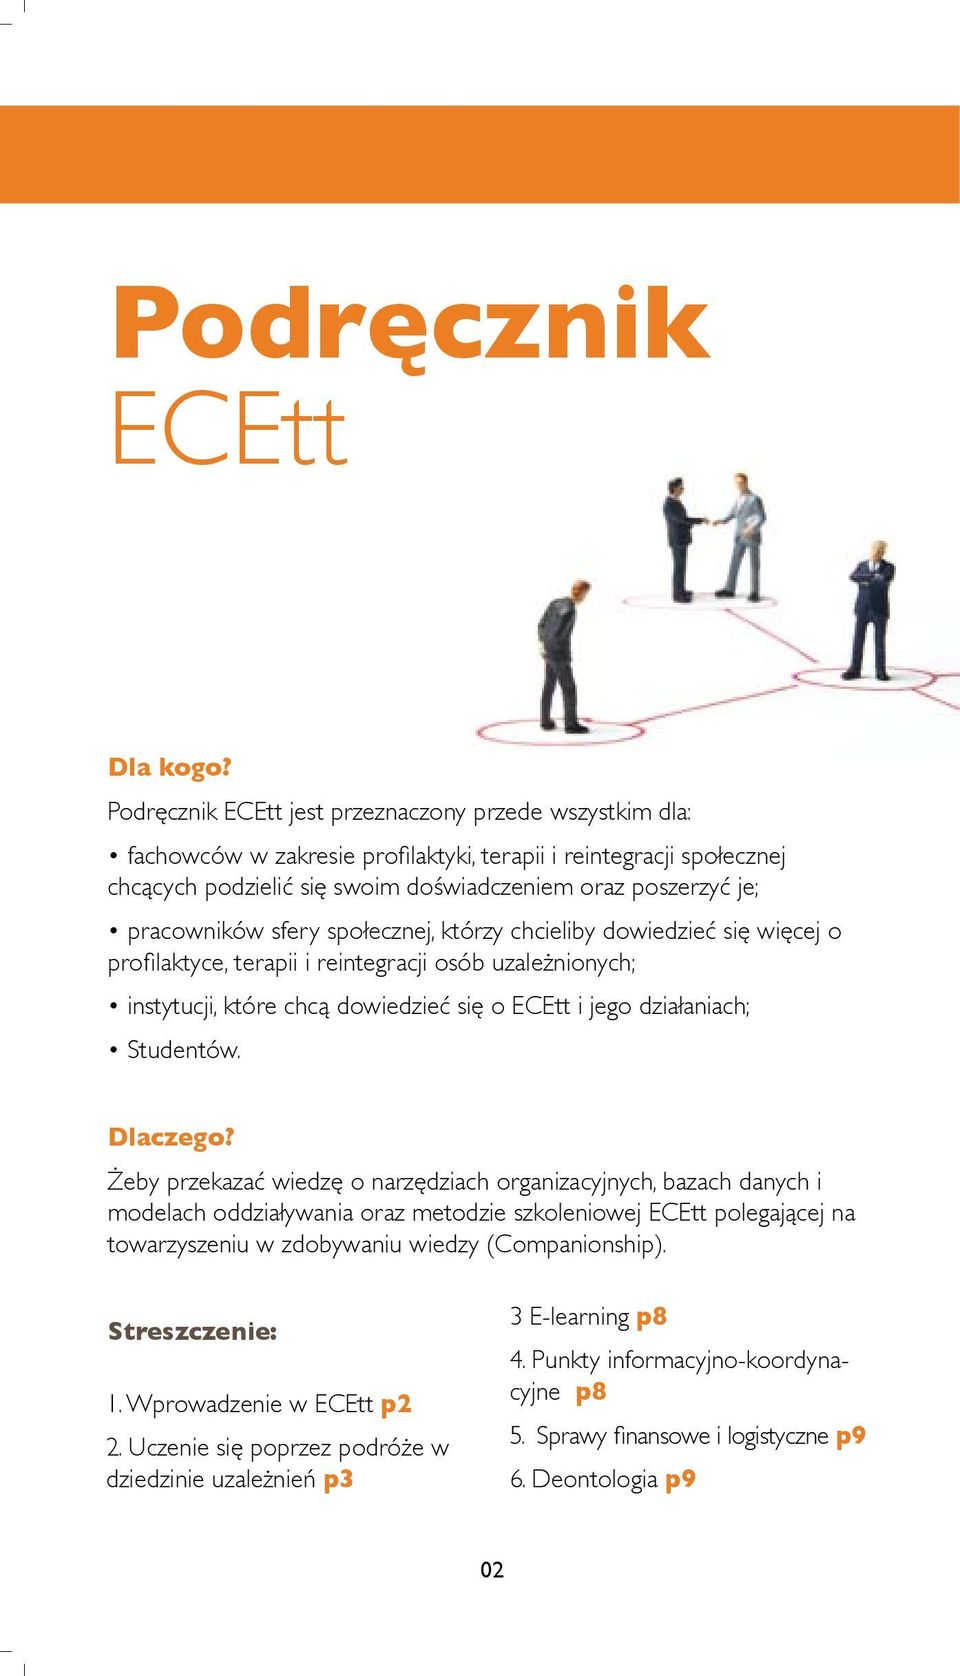 pracowników sfery społecznej, którzy chcieliby dowiedzieć się więcej o profilaktyce, terapii i reintegracji osób uzależnionych; instytucji, które chcą dowiedzieć się o ECEtt i jego działaniach;